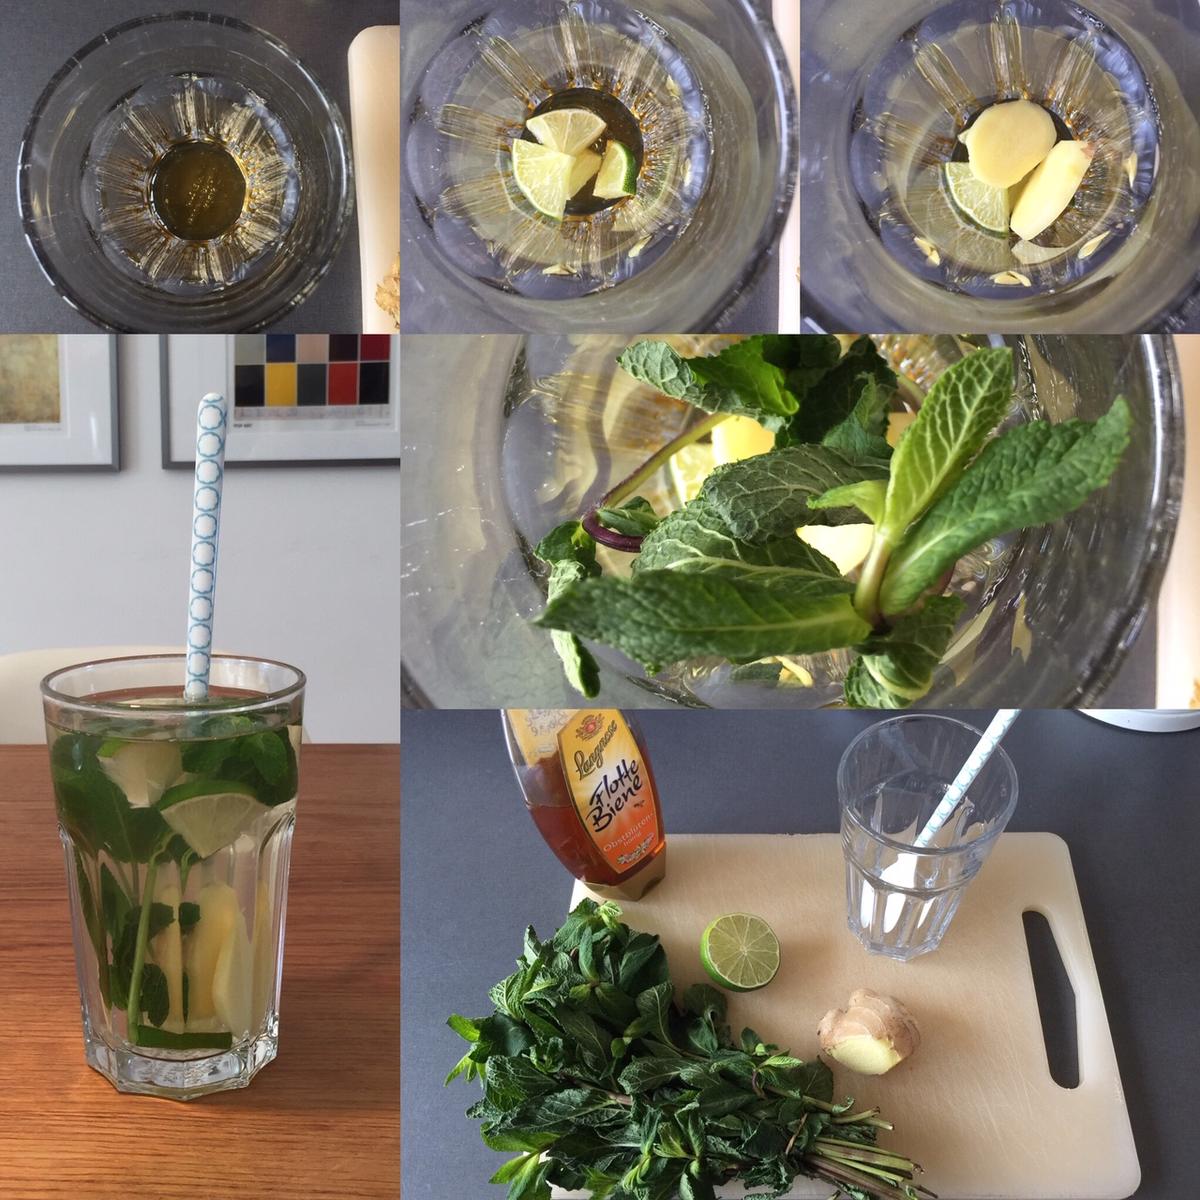 Ingwer-Tee mit Limette/Zitrone, Honig und Minze - gesund und sooo lecker - Rezept - Bild Nr. 7618